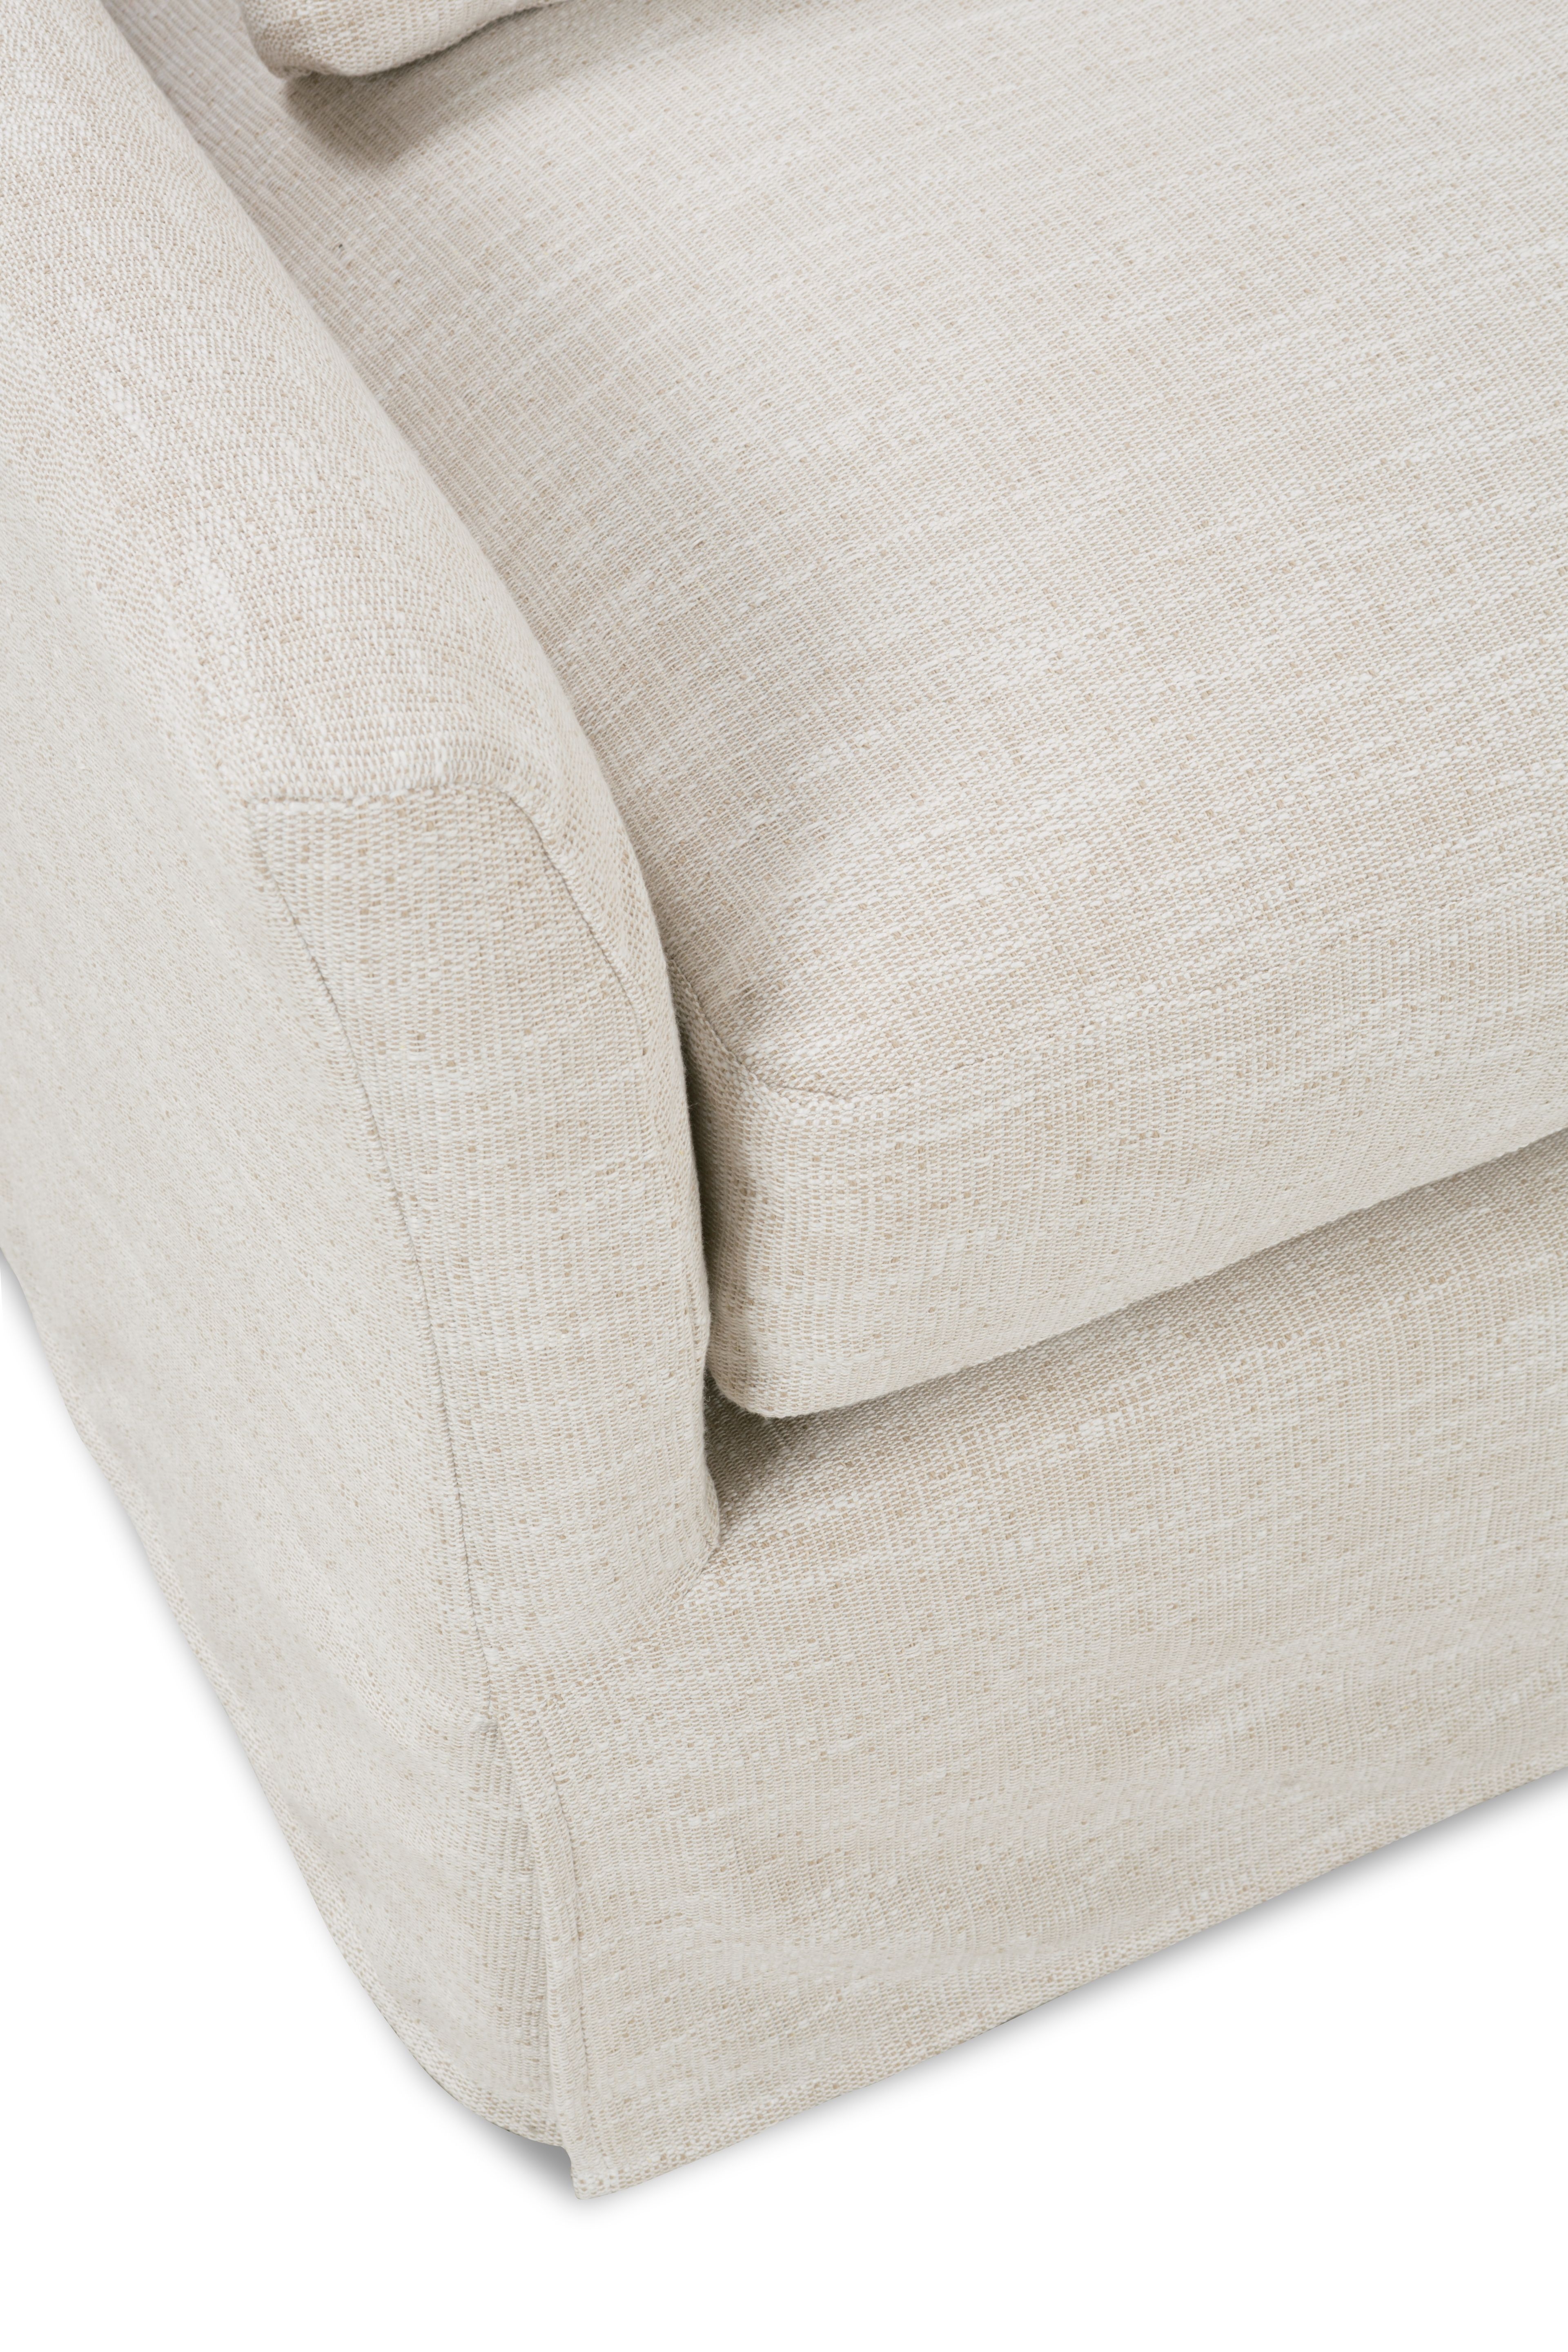 Moreau Slipcover Sofa, Bench Cushion, White, 95" - Image 5